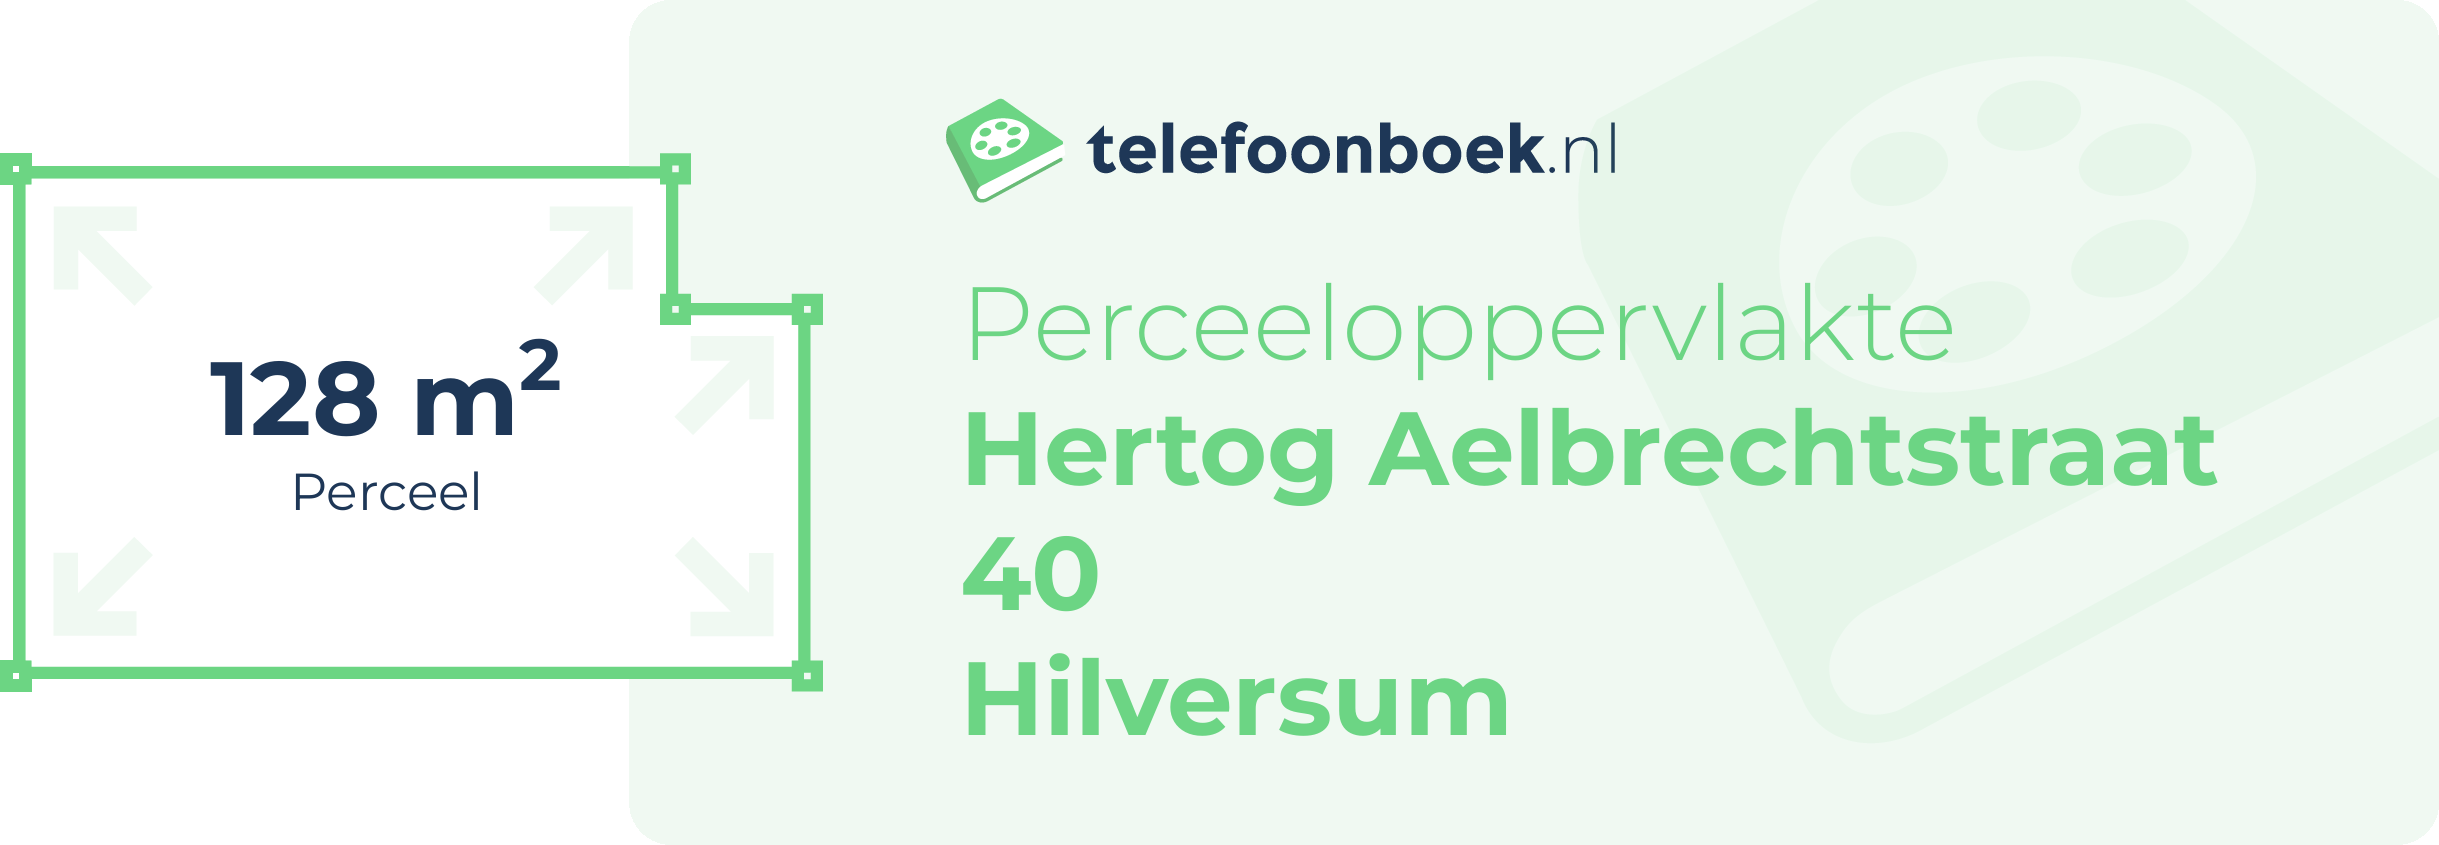 Perceeloppervlakte Hertog Aelbrechtstraat 40 Hilversum